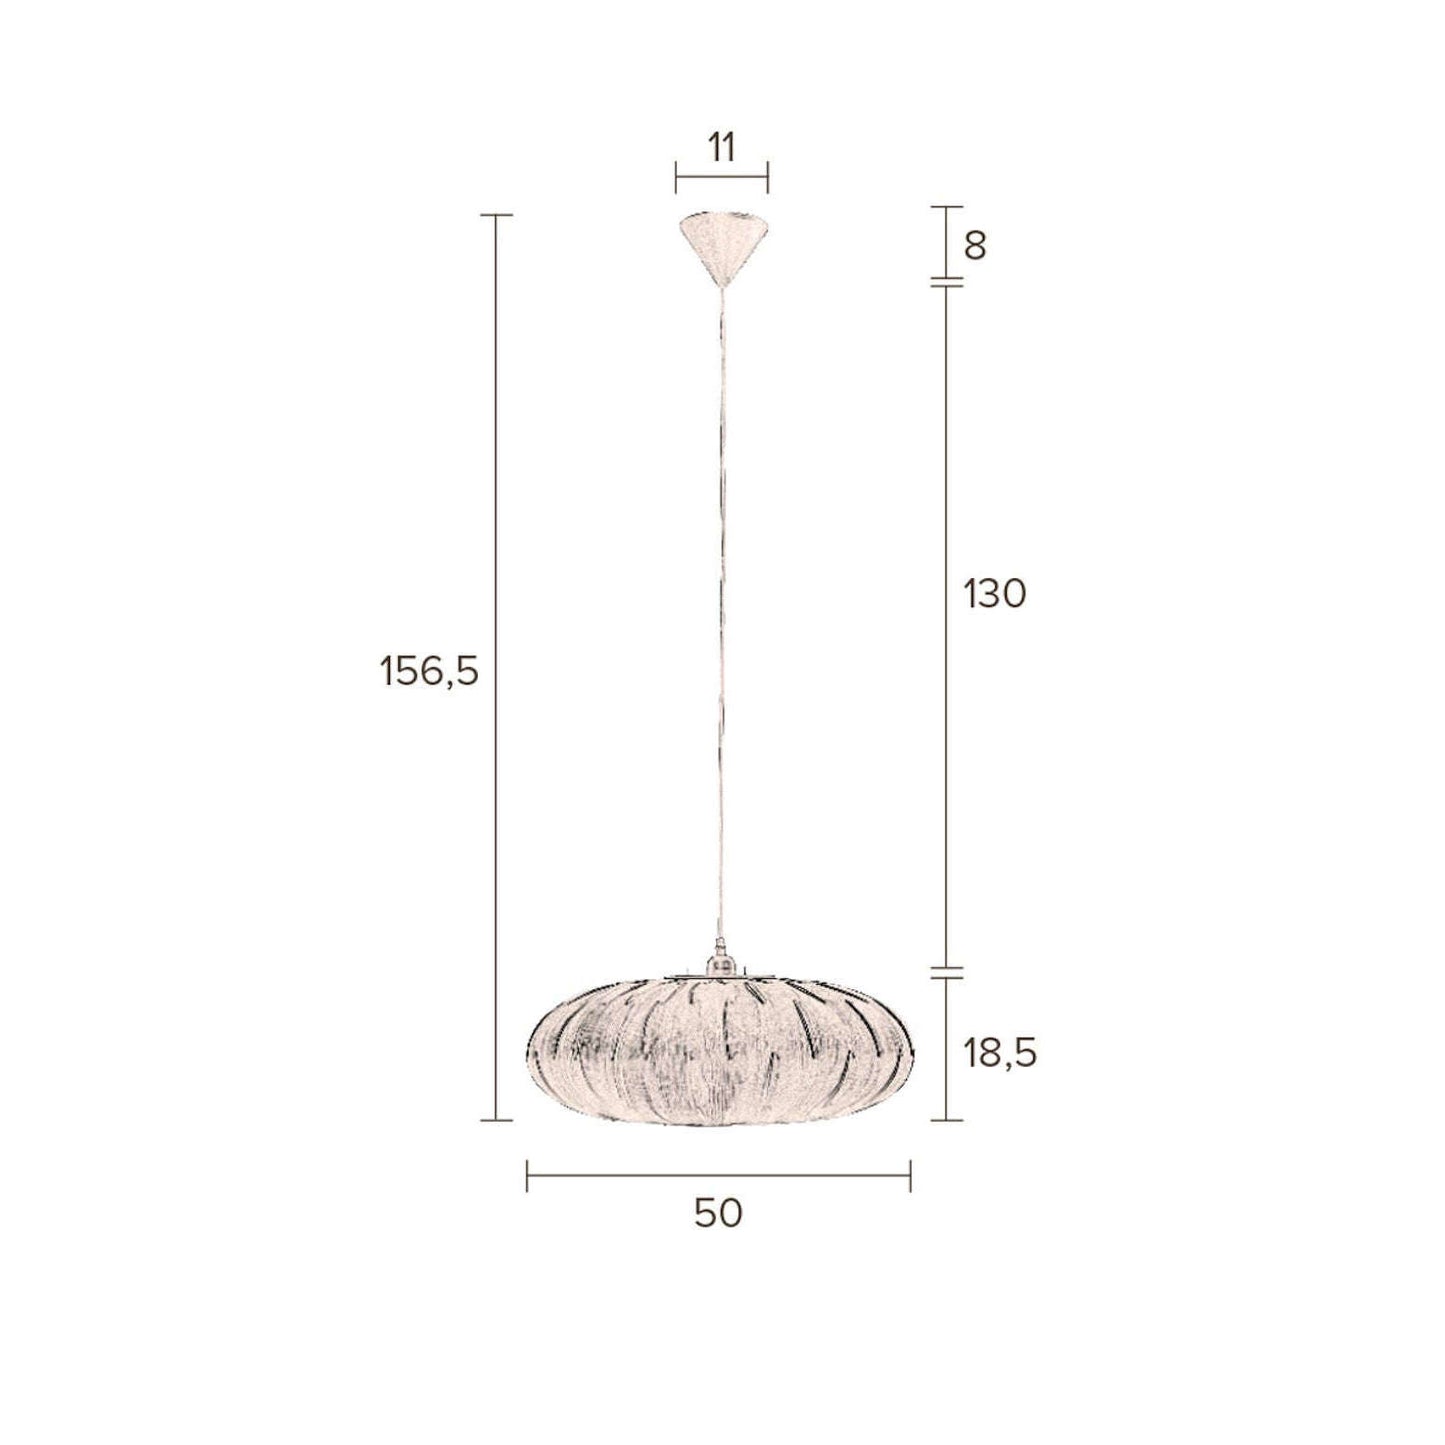 Dutchbone hanglamp bond oval Ø50 x 156,5 cm